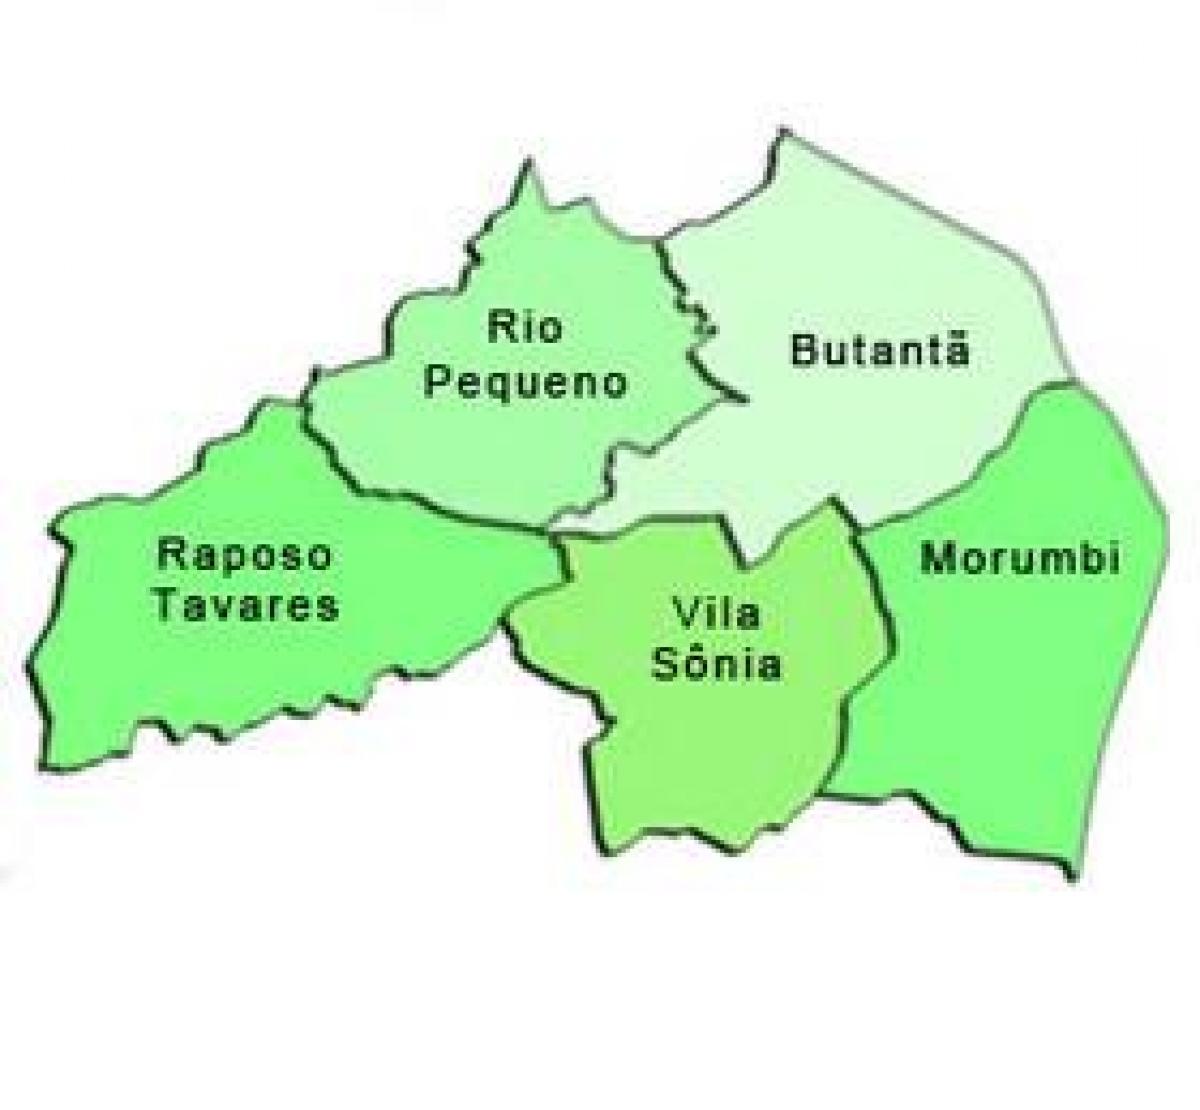 Kart супрефектур Butantã